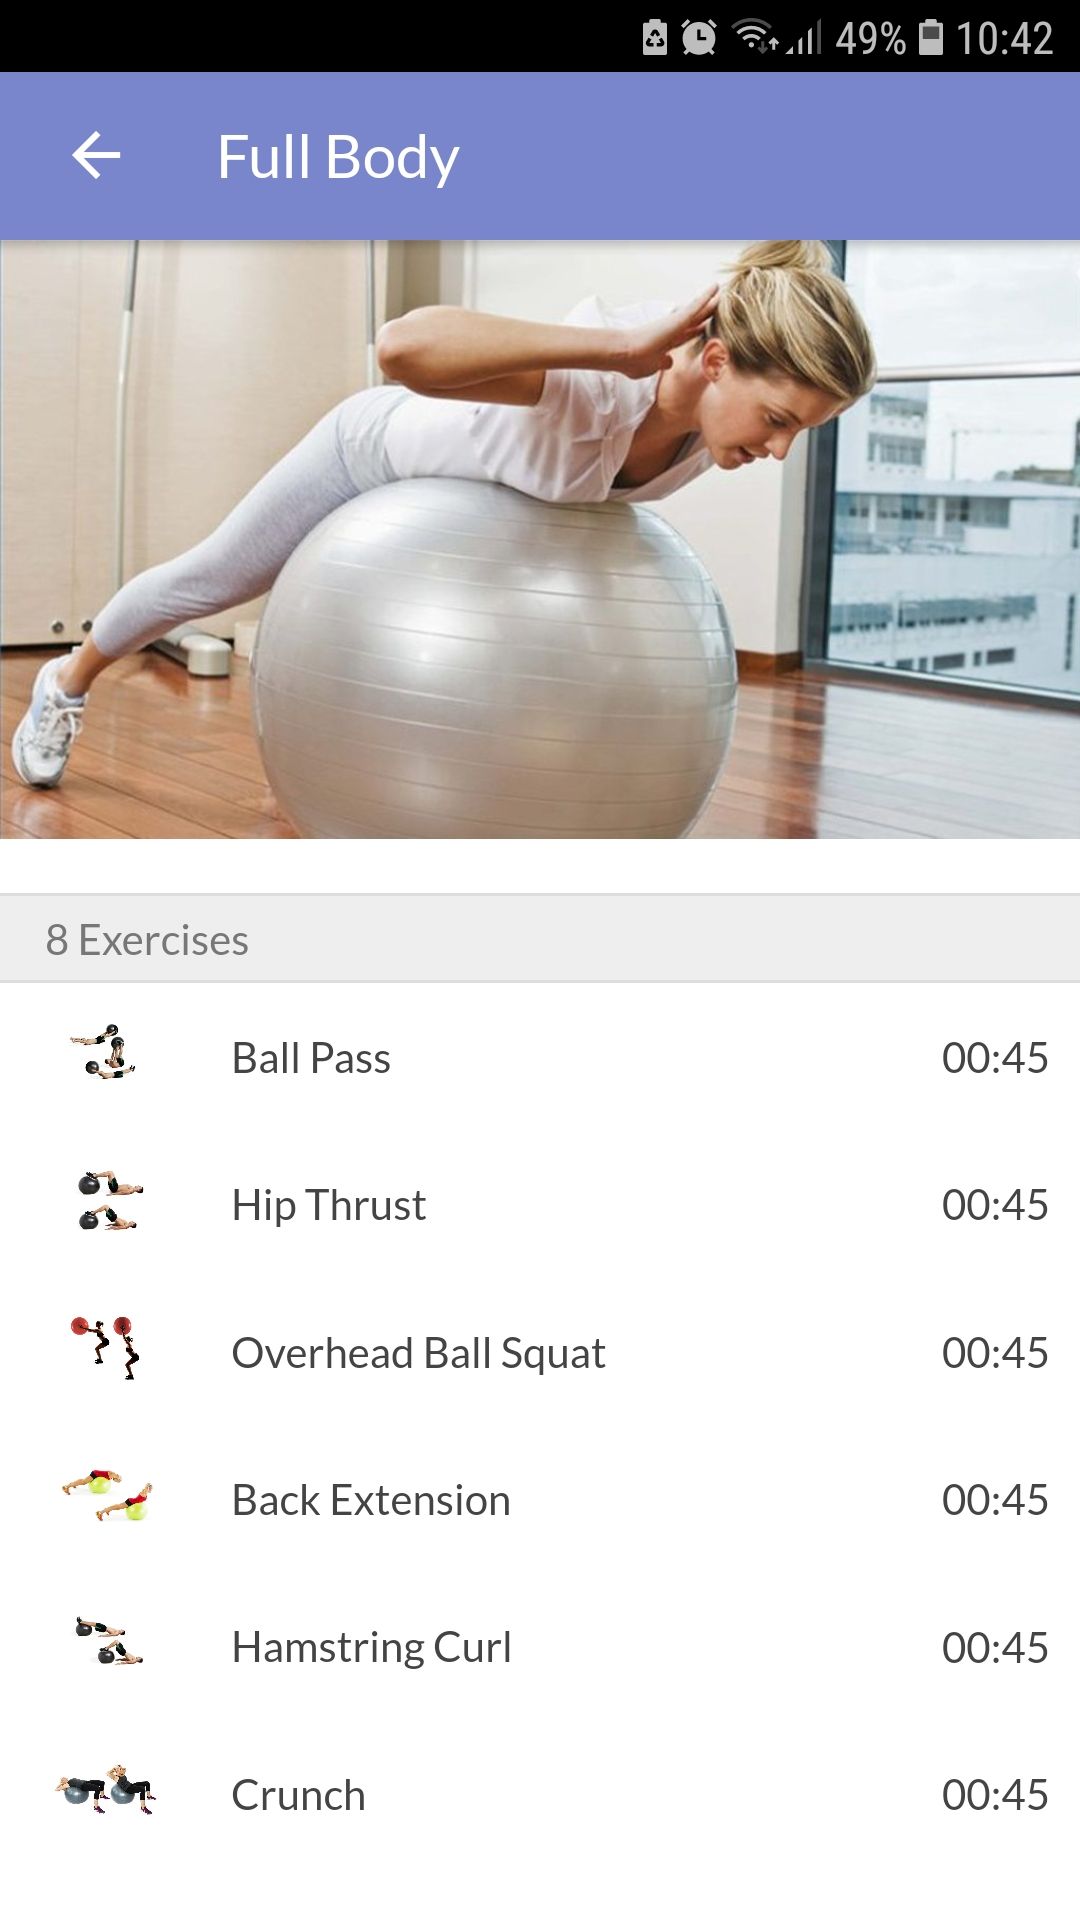 Exercise Ball Workout mobile fitness app full body